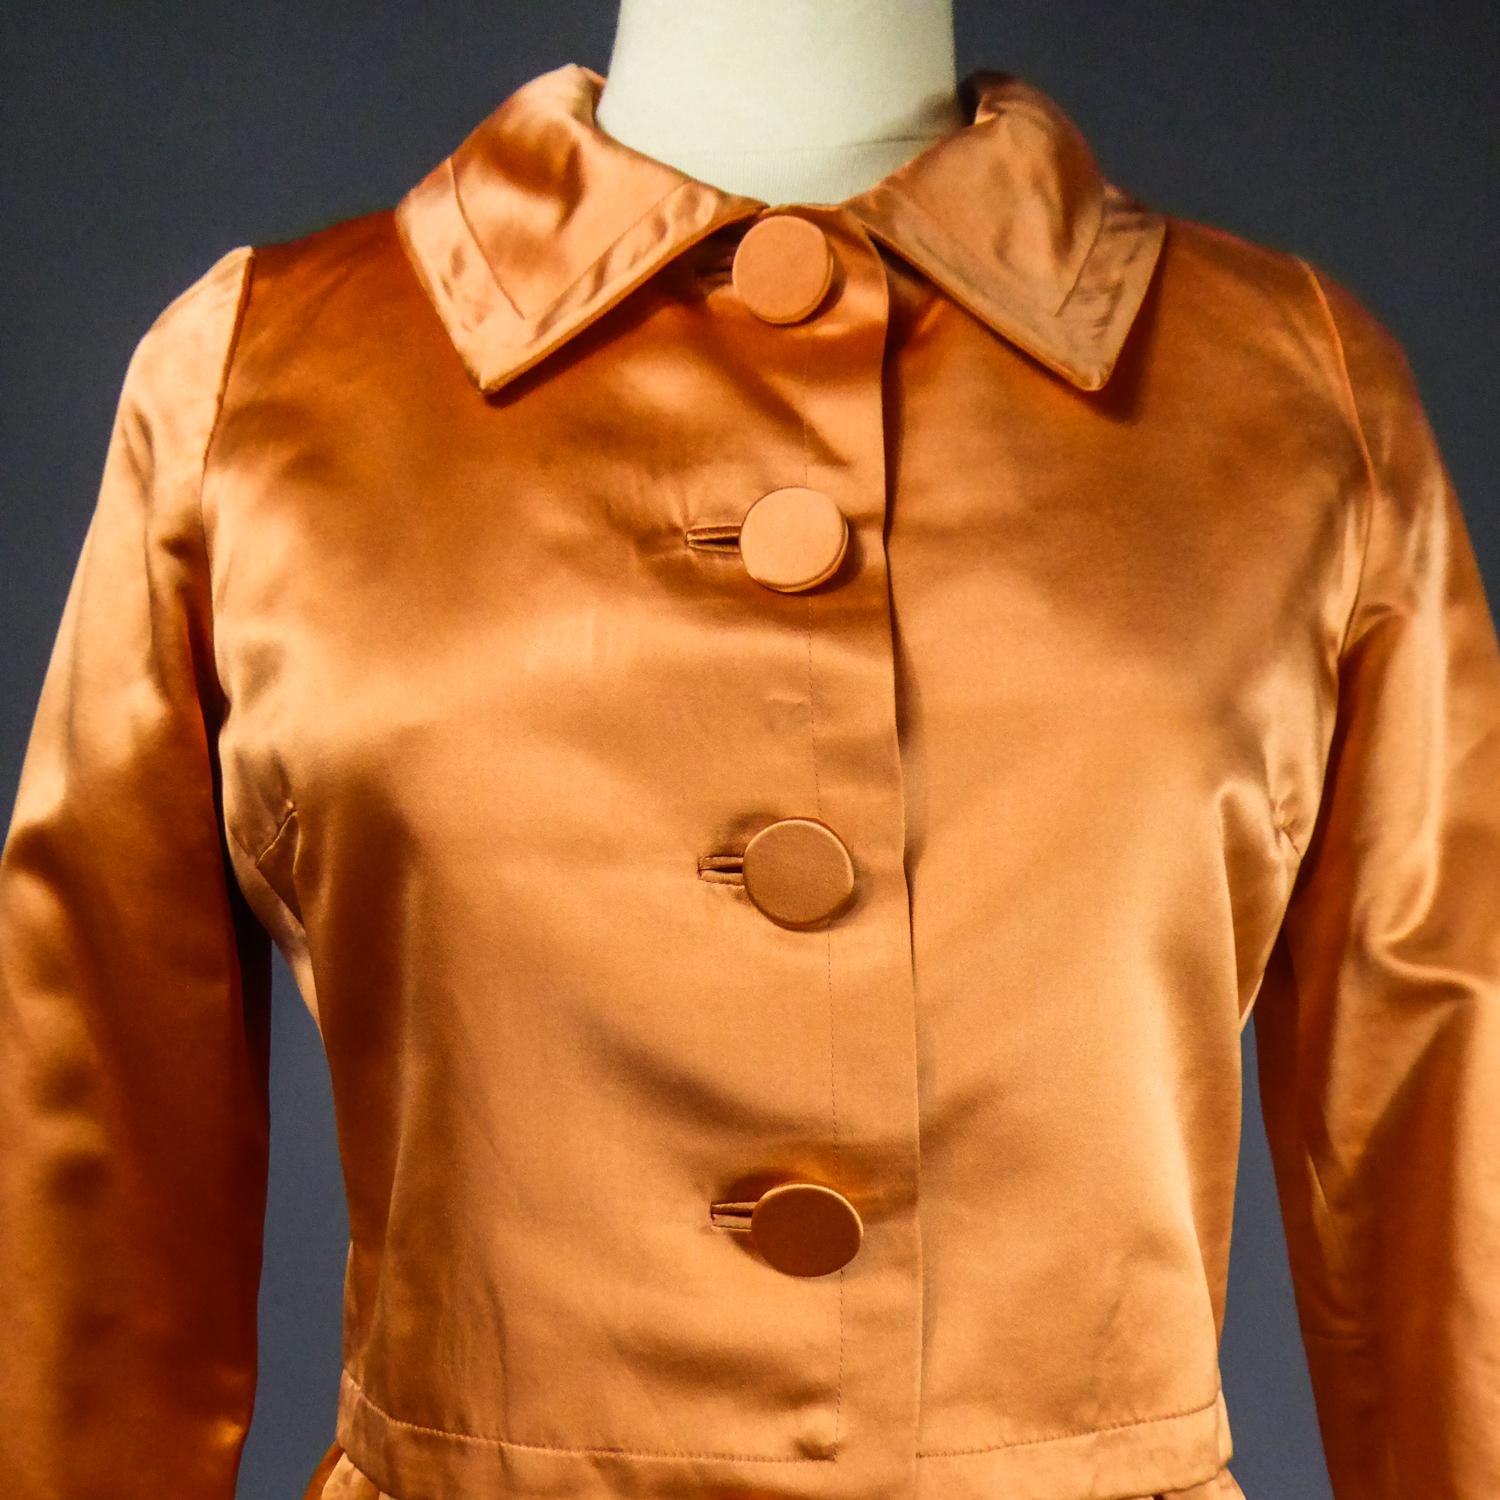 CIRCA 1950/1960
Frankreich

Jacke und Kleid aus glänzendem Mandarin-Seidensatin des berühmten Hausdesigners Jacques HEIM aus den späten 1950er Jahren. Ärmelloses Kleid mit weitem, tiefem Ausschnitt, der in der Taille ausläuft. Zwei Taschen mit